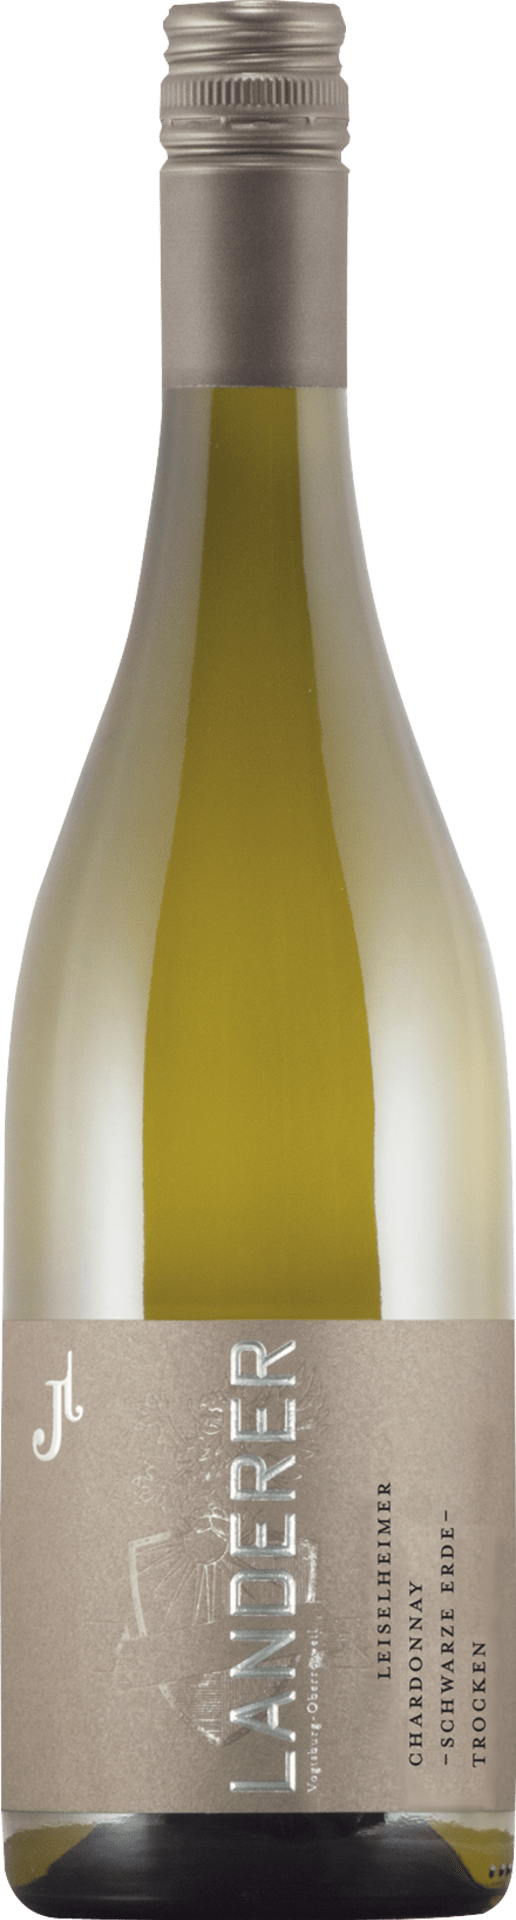 Leiselheimer Chardonnay Qualitätswein trocken "Schwarze Erde"